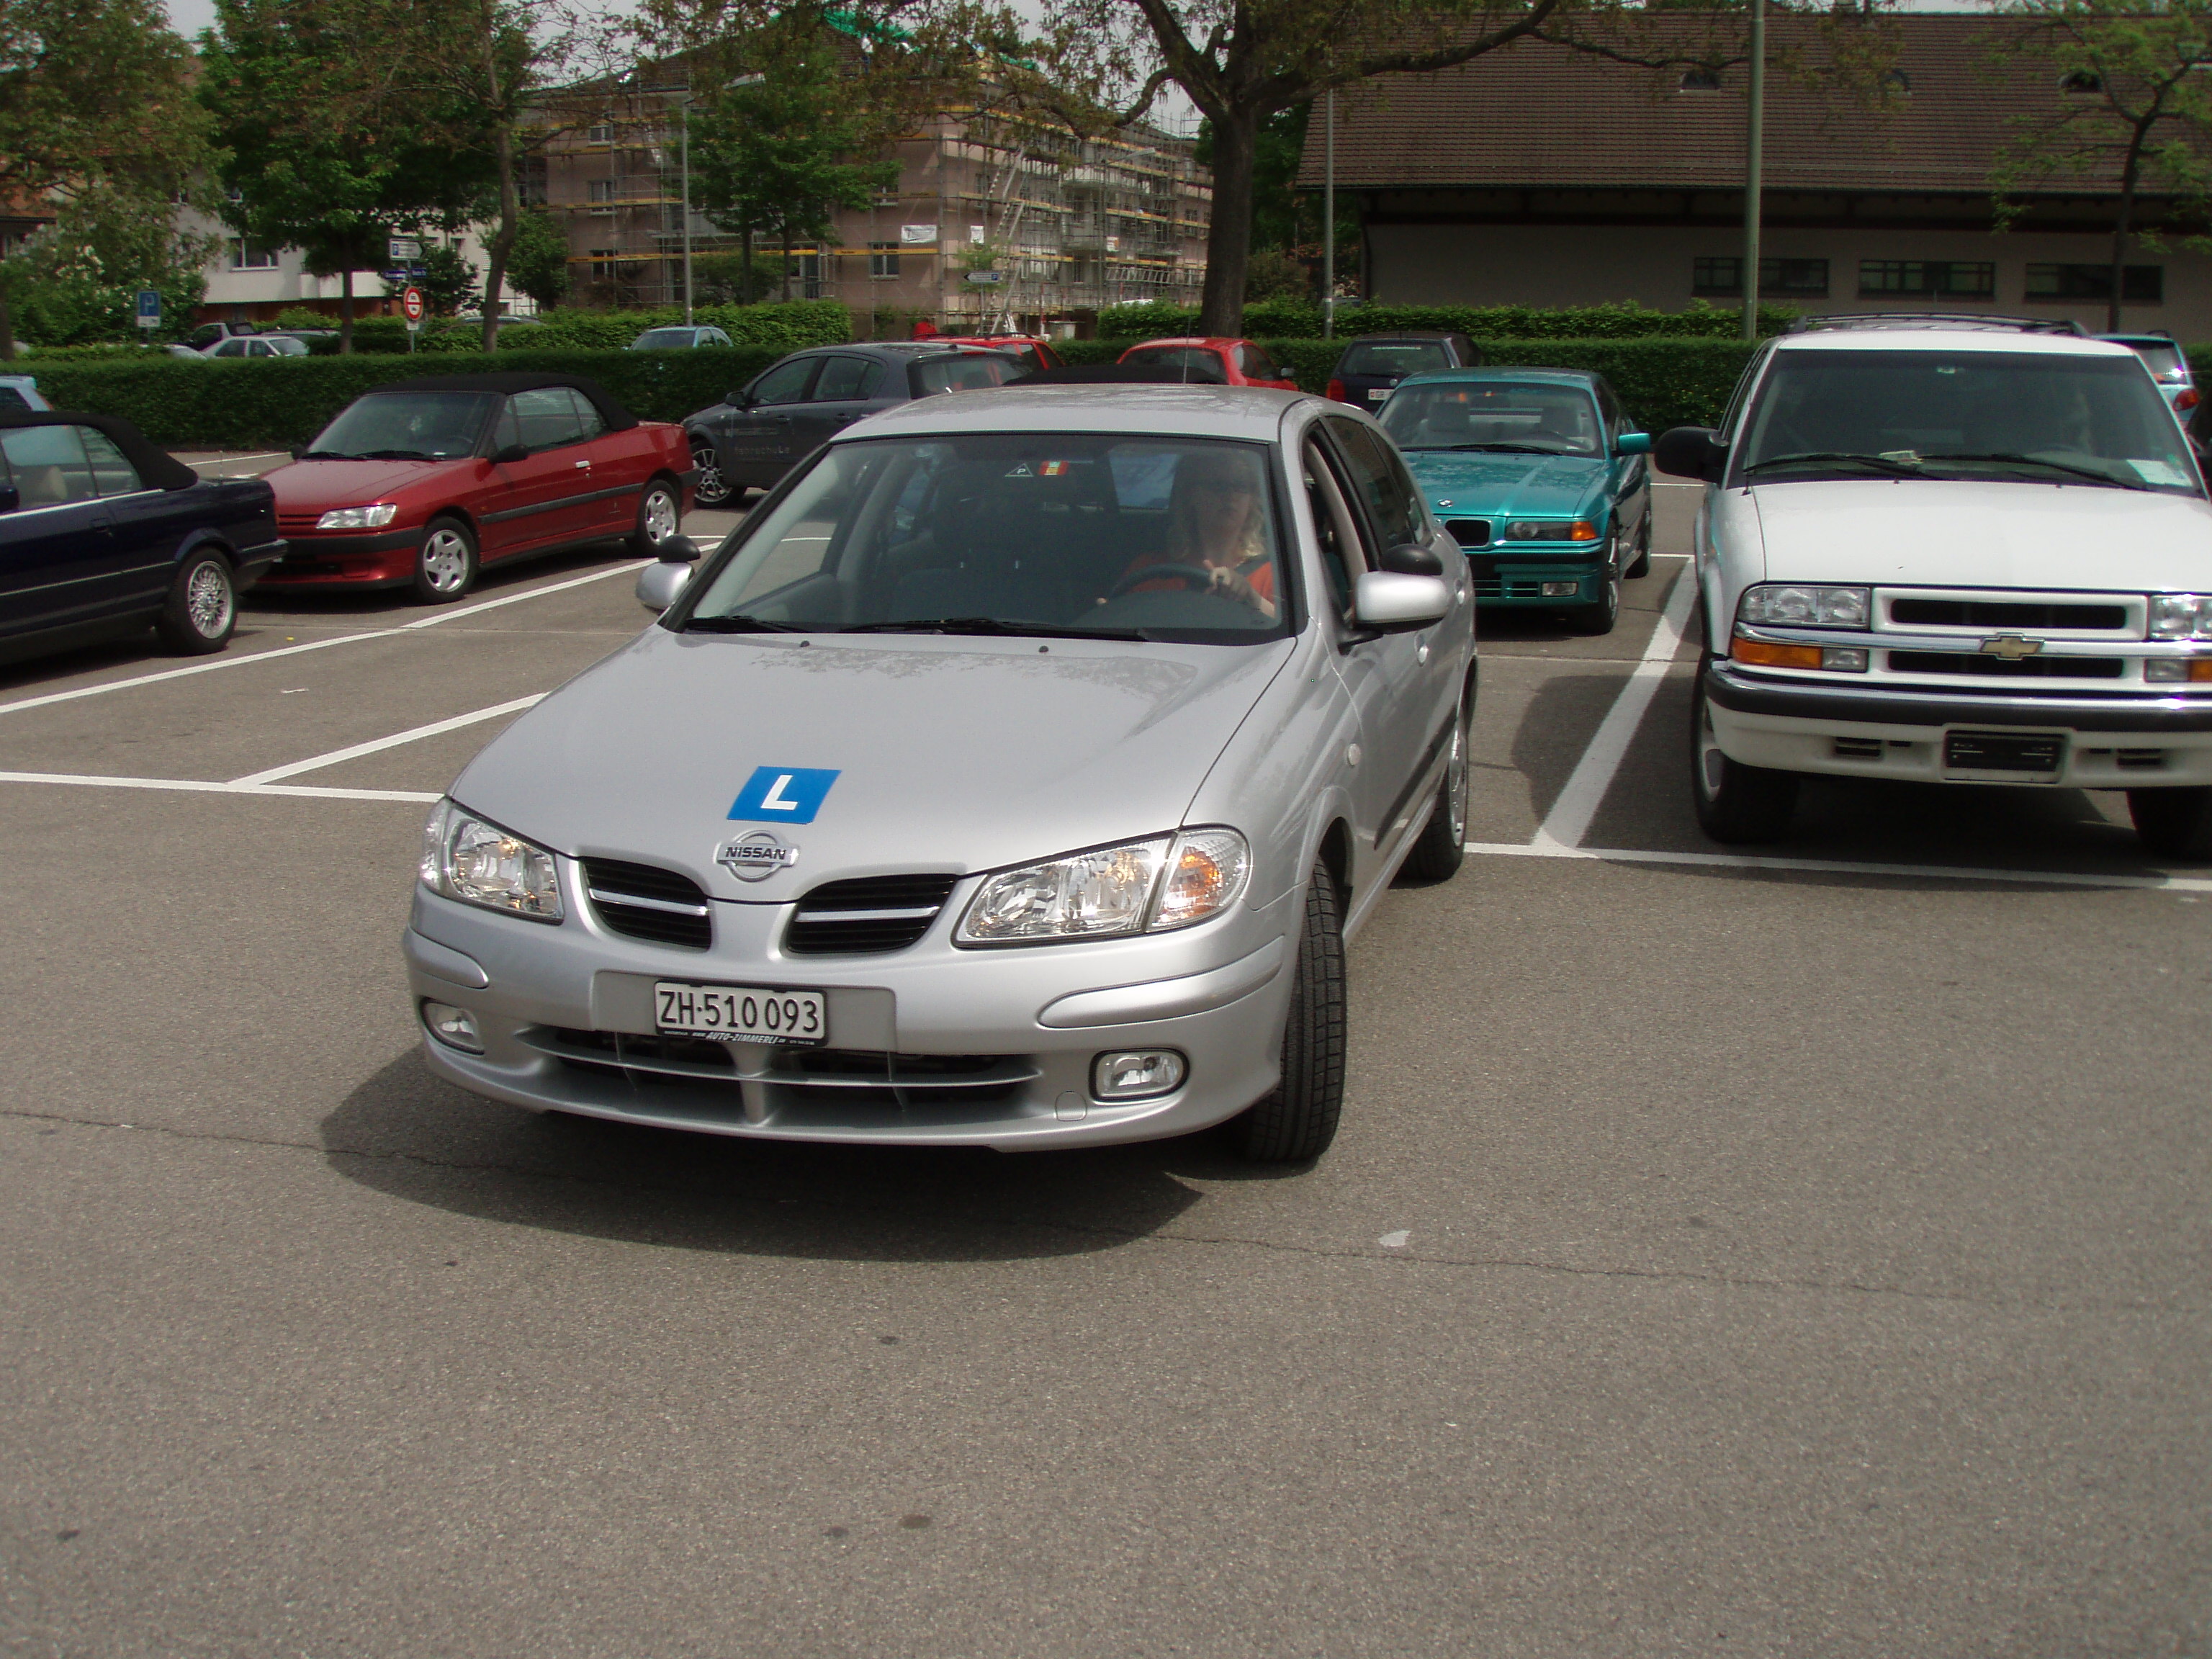 ABCD Fahrschule bietet auf Nachhilfe für Parkieren, Autobahn befahren an.